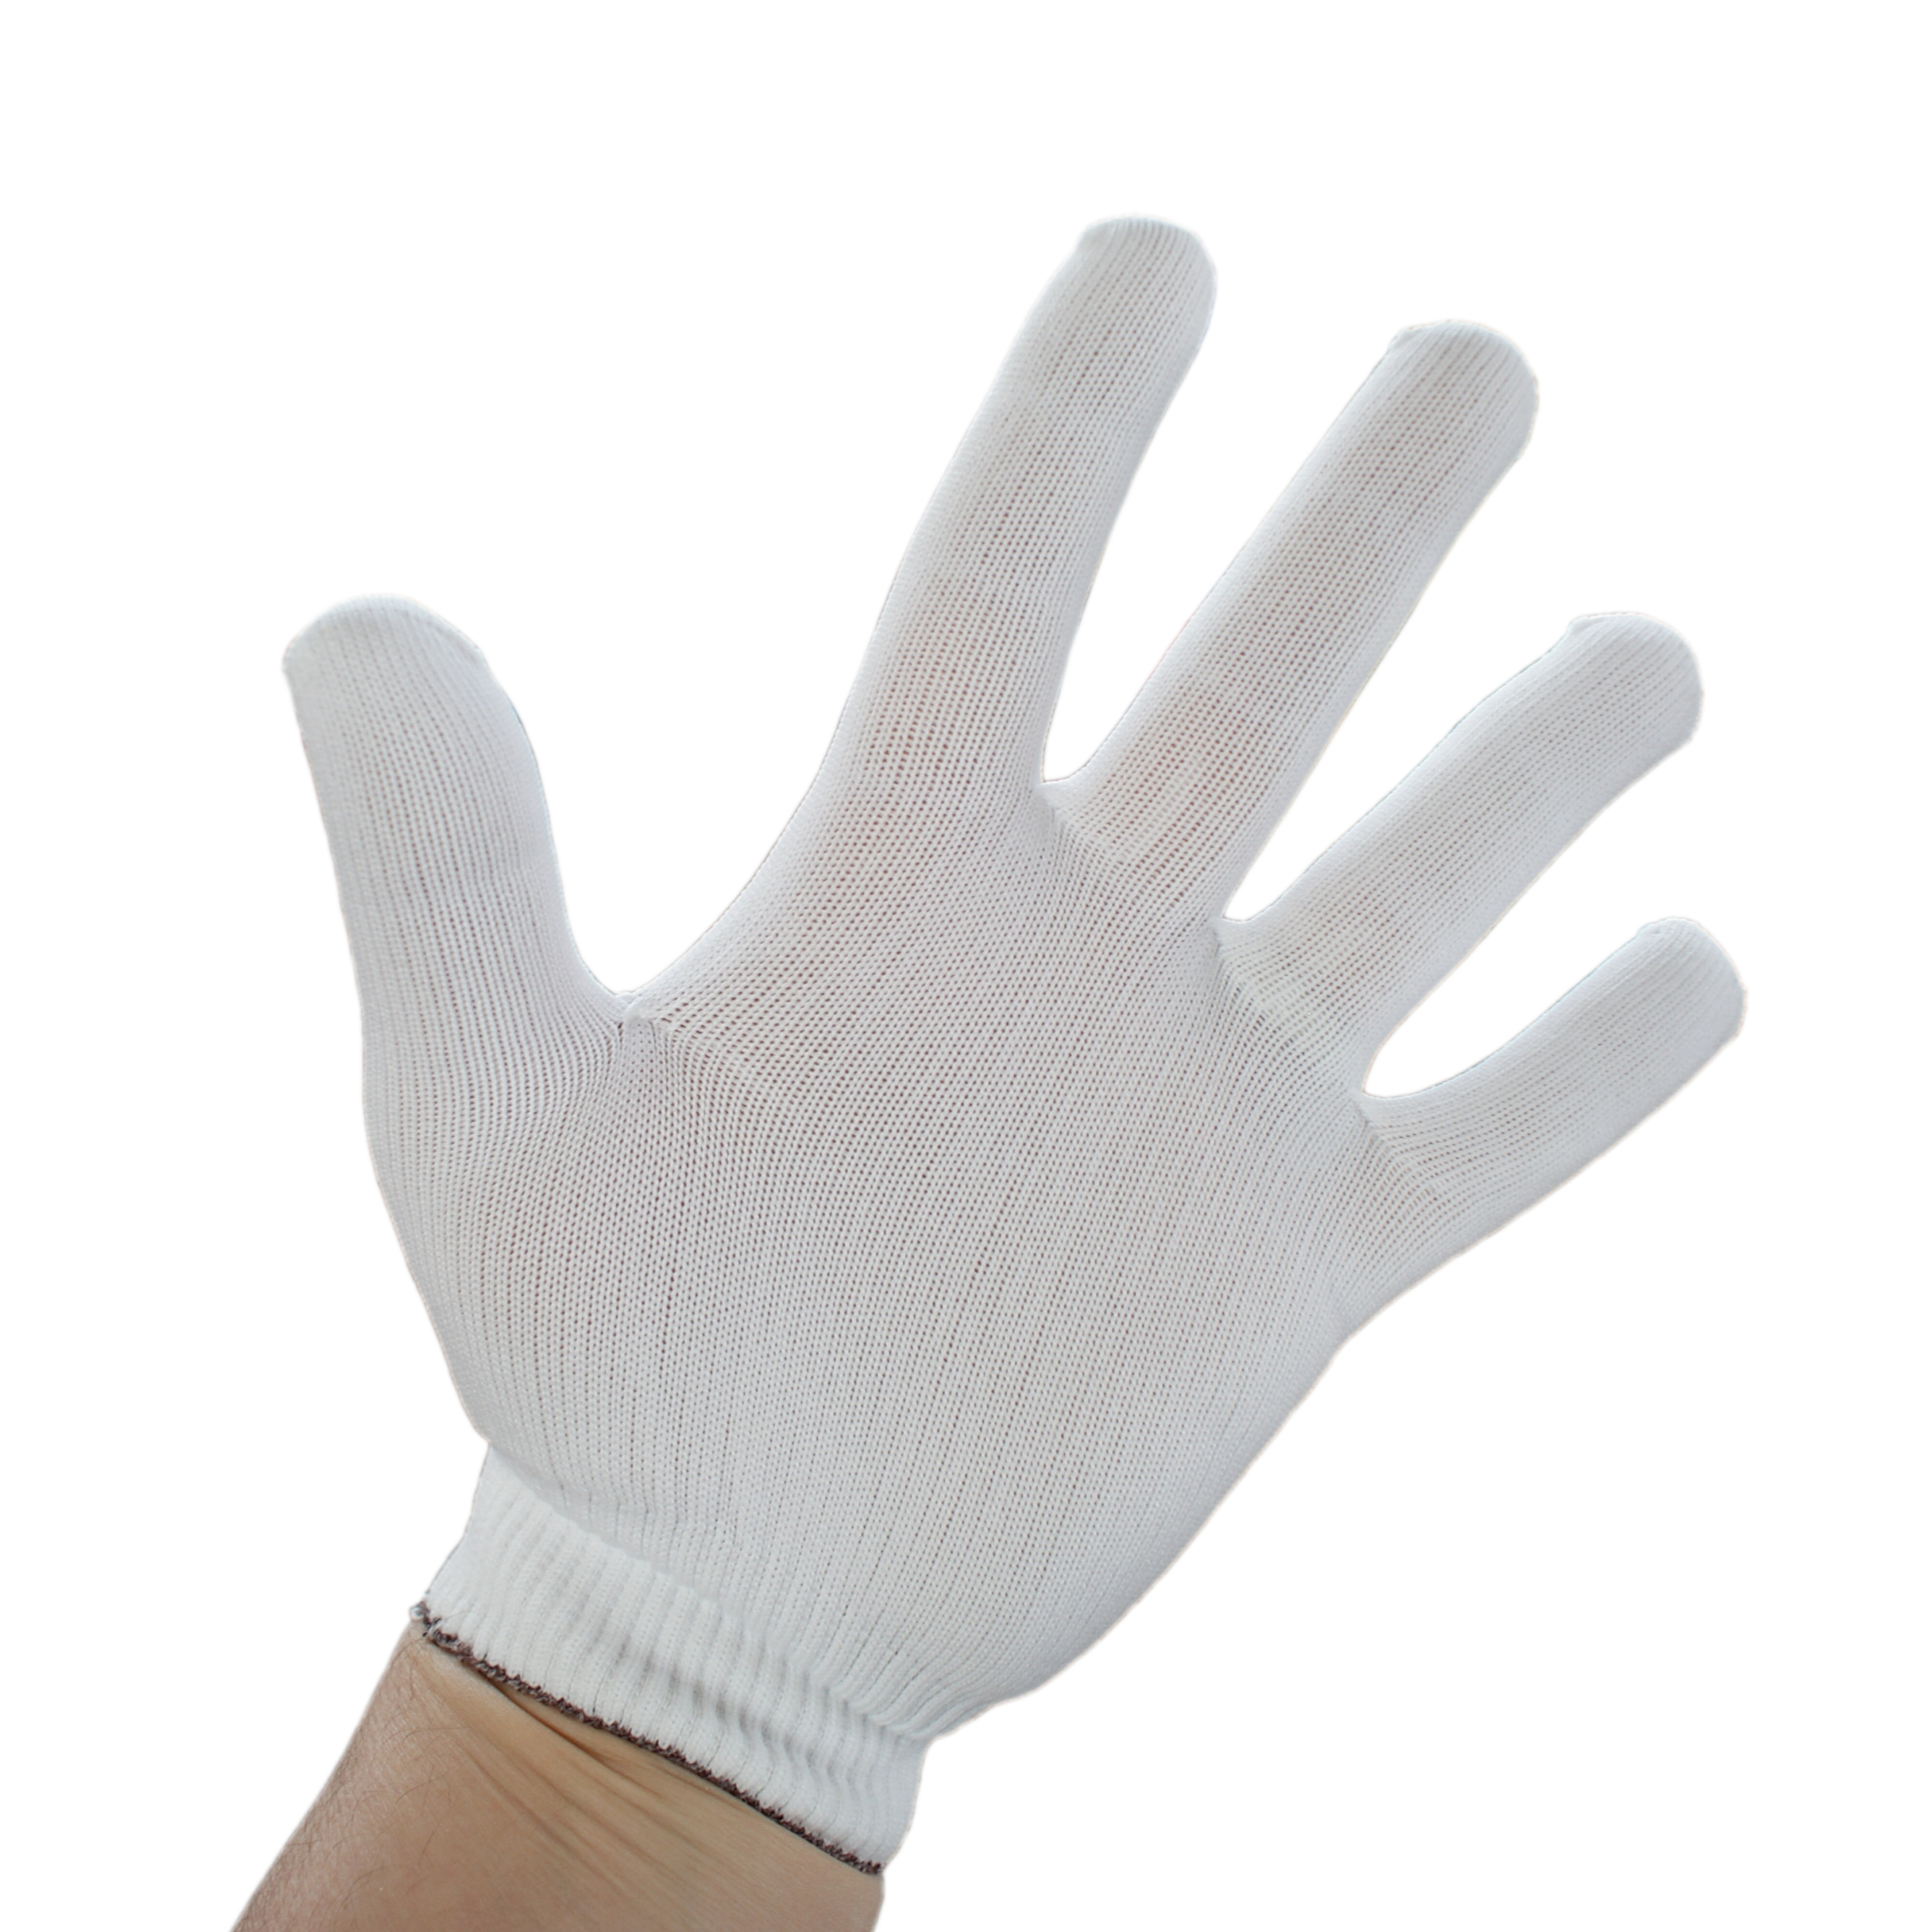 Nylon-Stretch gloves 9